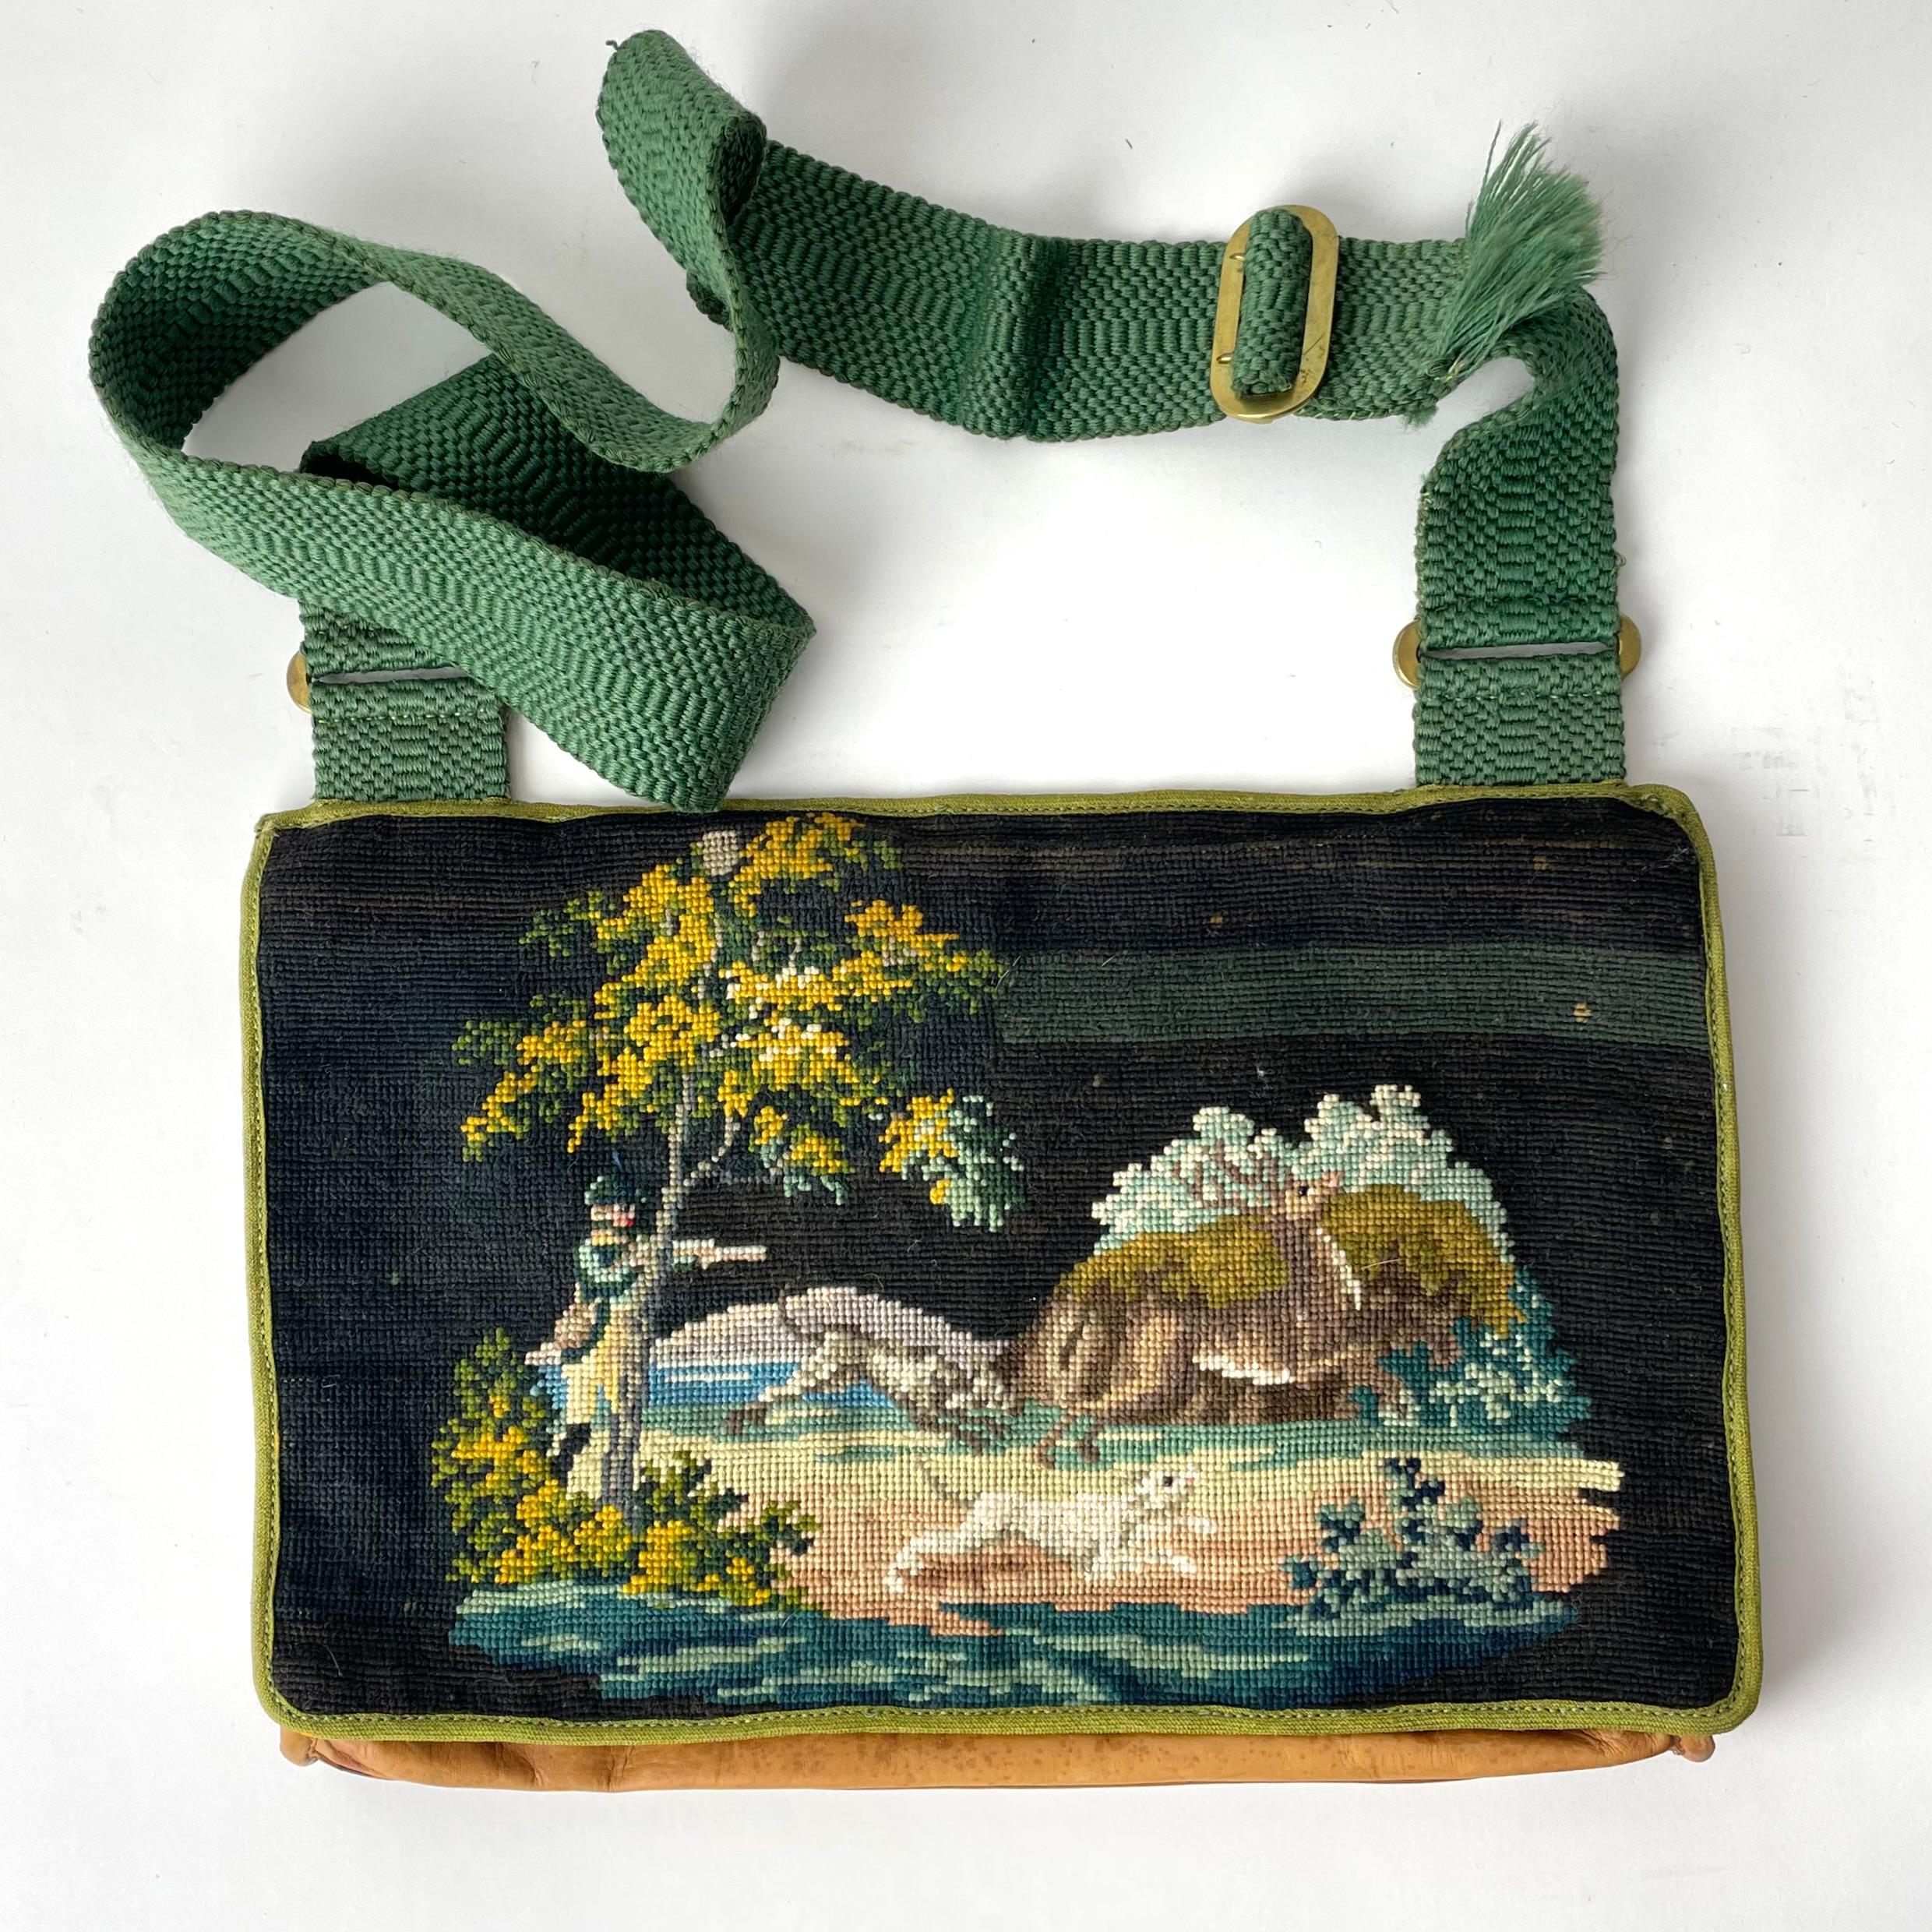 Eine schöne Jagdtasche aus Leder mit Petit Point Dekor aus einer Jagdszene. Hergestellt im 19. Jahrhundert und innen mit Taschen für Patronen.

Abnutzung entsprechend dem Alter und dem Gebrauch 